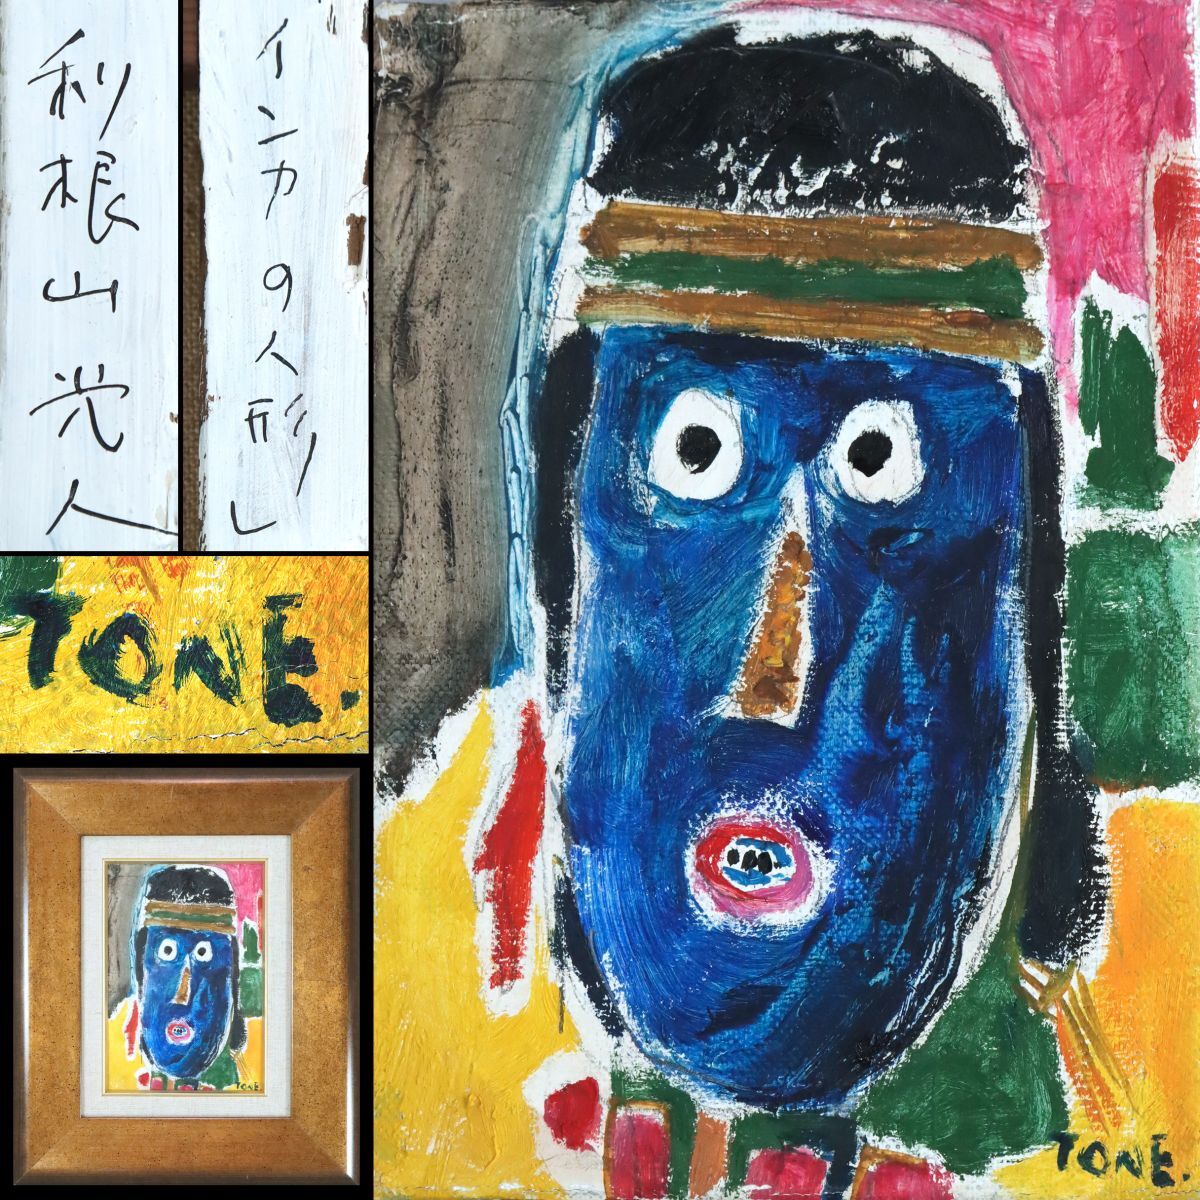 [0830120] [Authentisches Werk] Mitsuto Toneyama Ölgemälde Inka-Puppe SM 1991, signiert, gerahmt, Inklusive Papierbox ◆ Student der Präfektur Ibaraki / Maler der Sonne / Gemälde / Kunst / Kunstobjekt, Malerei, Ölgemälde, Stilllebenmalerei